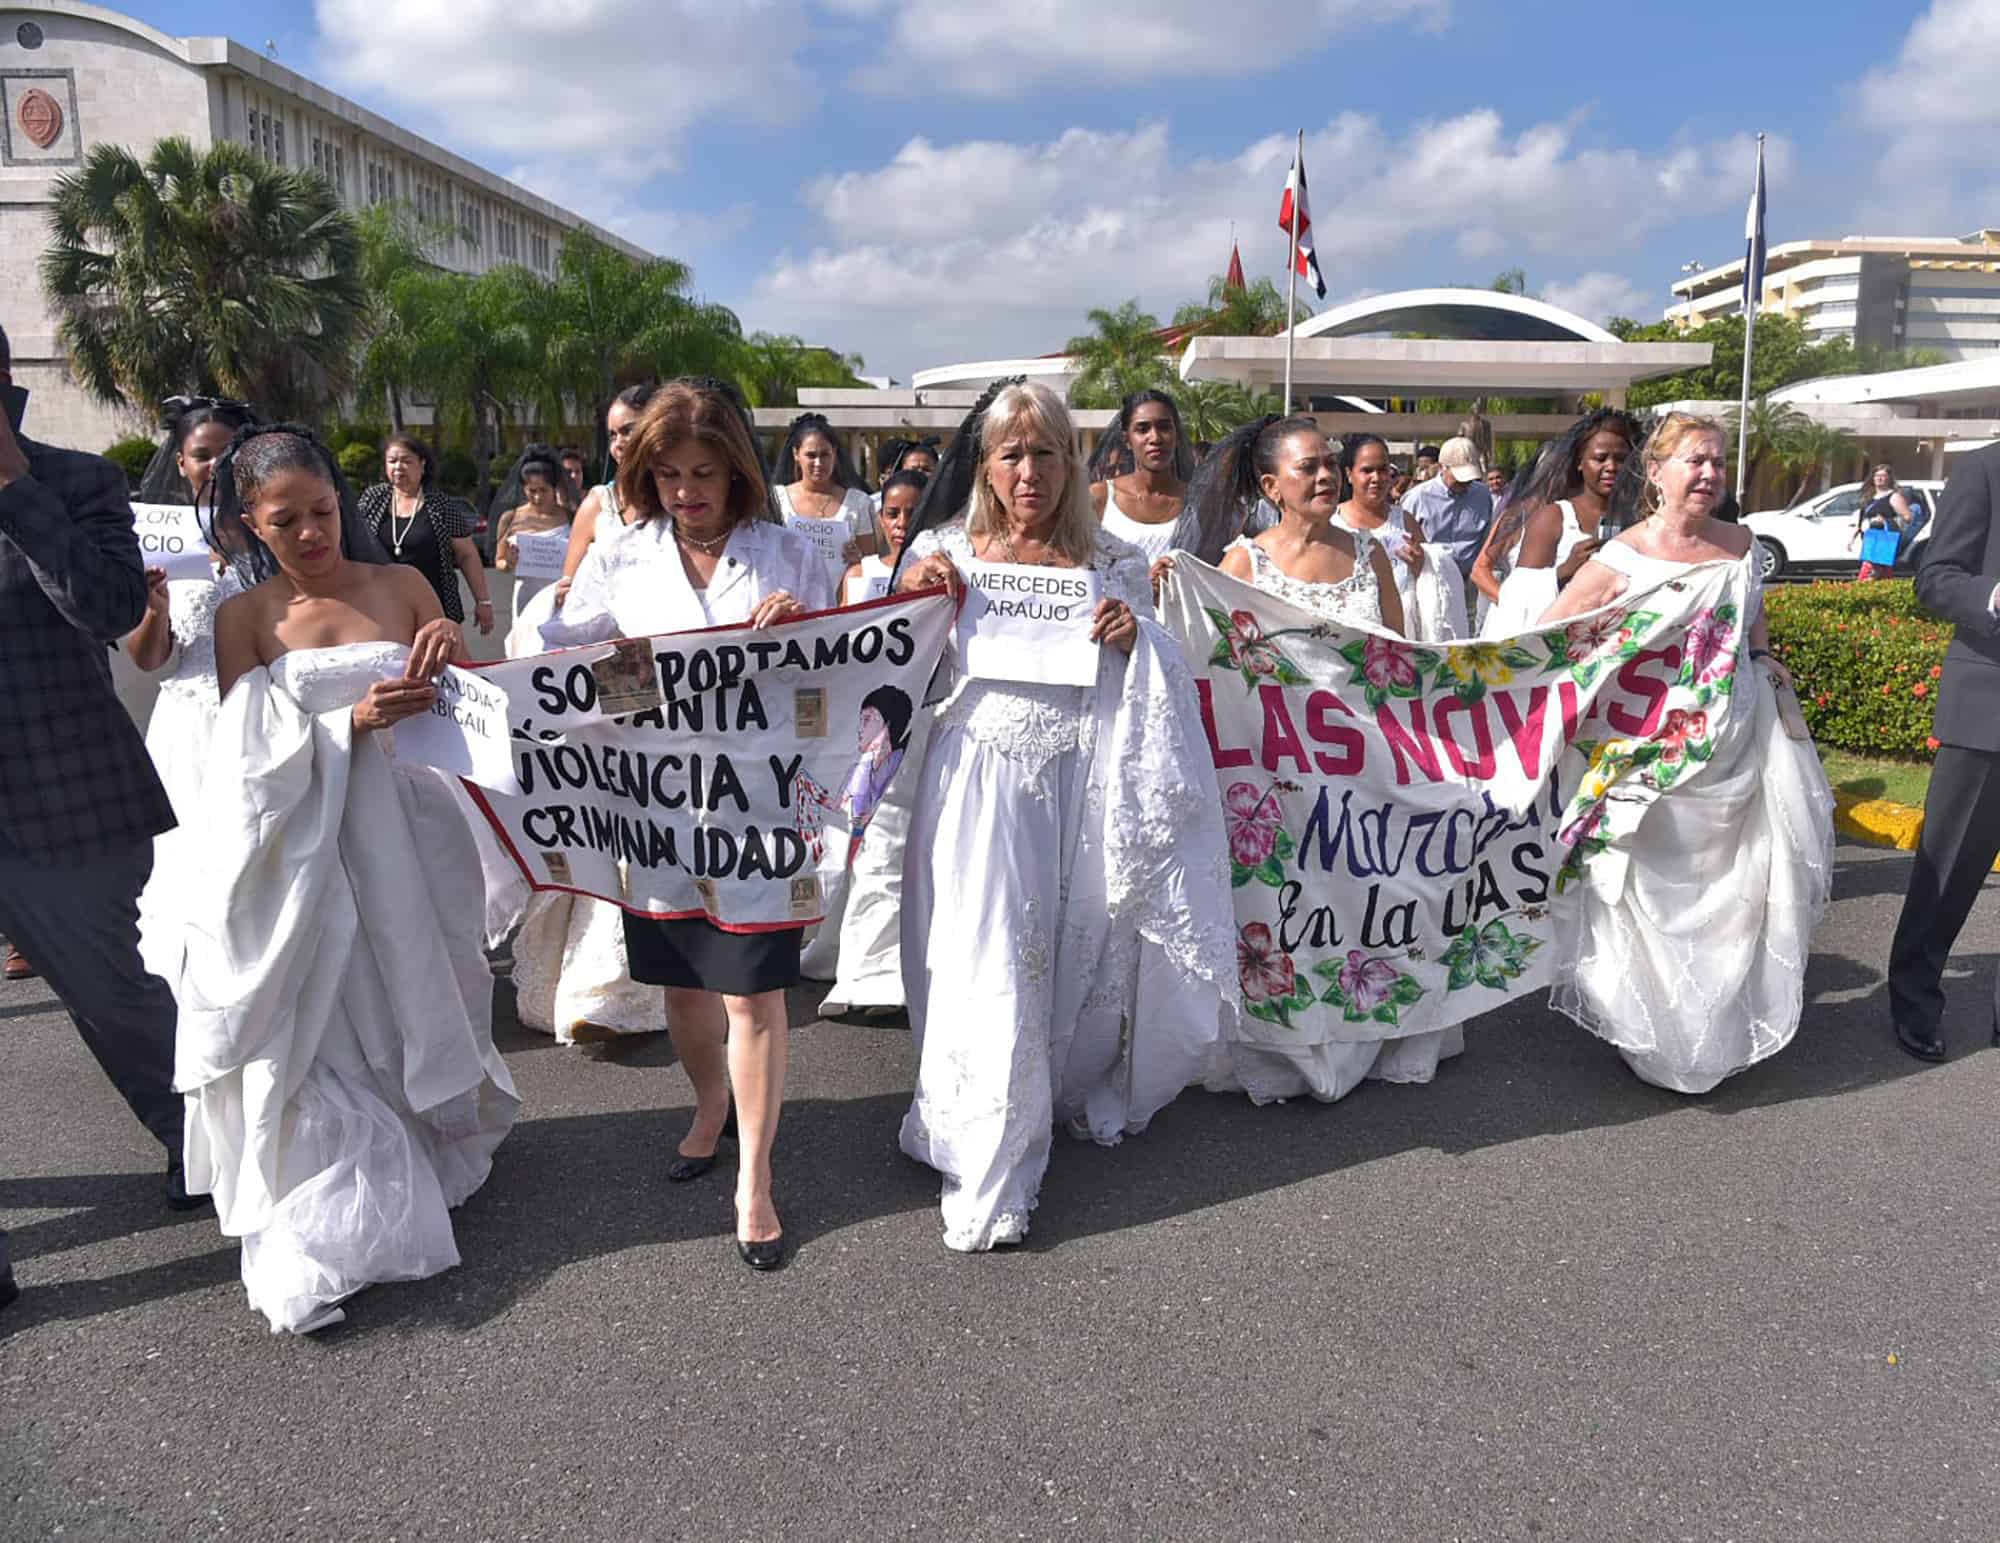 La Universidad Autónoma de Santo Domingo (UASD) celebró la tradicional marcha de las novias, una actividad que busca concienciar sobre el repudio a la violencia contra la mujer.